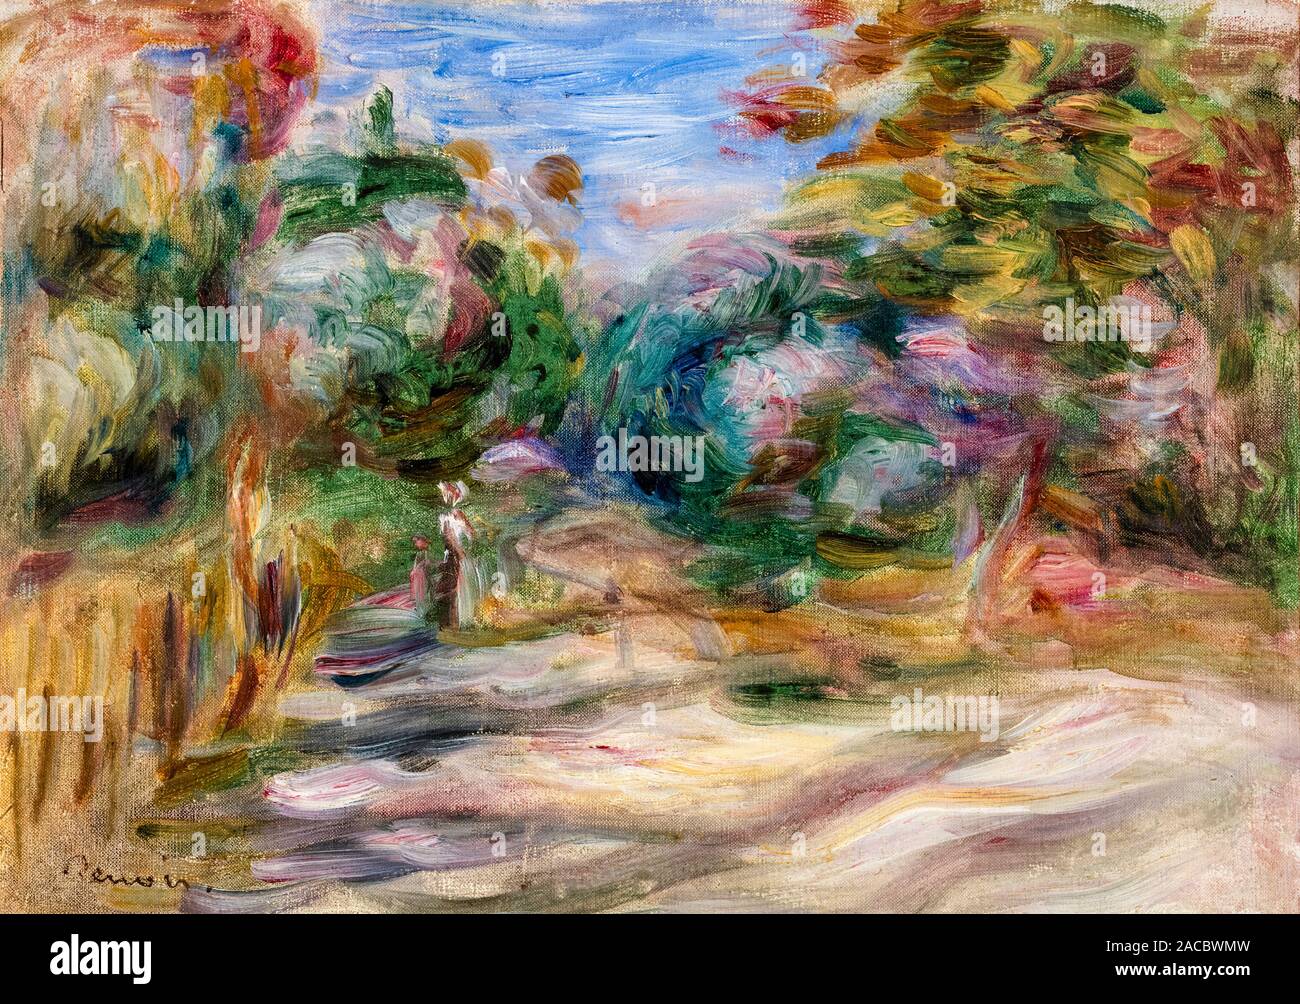 Pierre Auguste Renoir, Paysage, (Paysage), la peinture de paysages, 1911 Banque D'Images